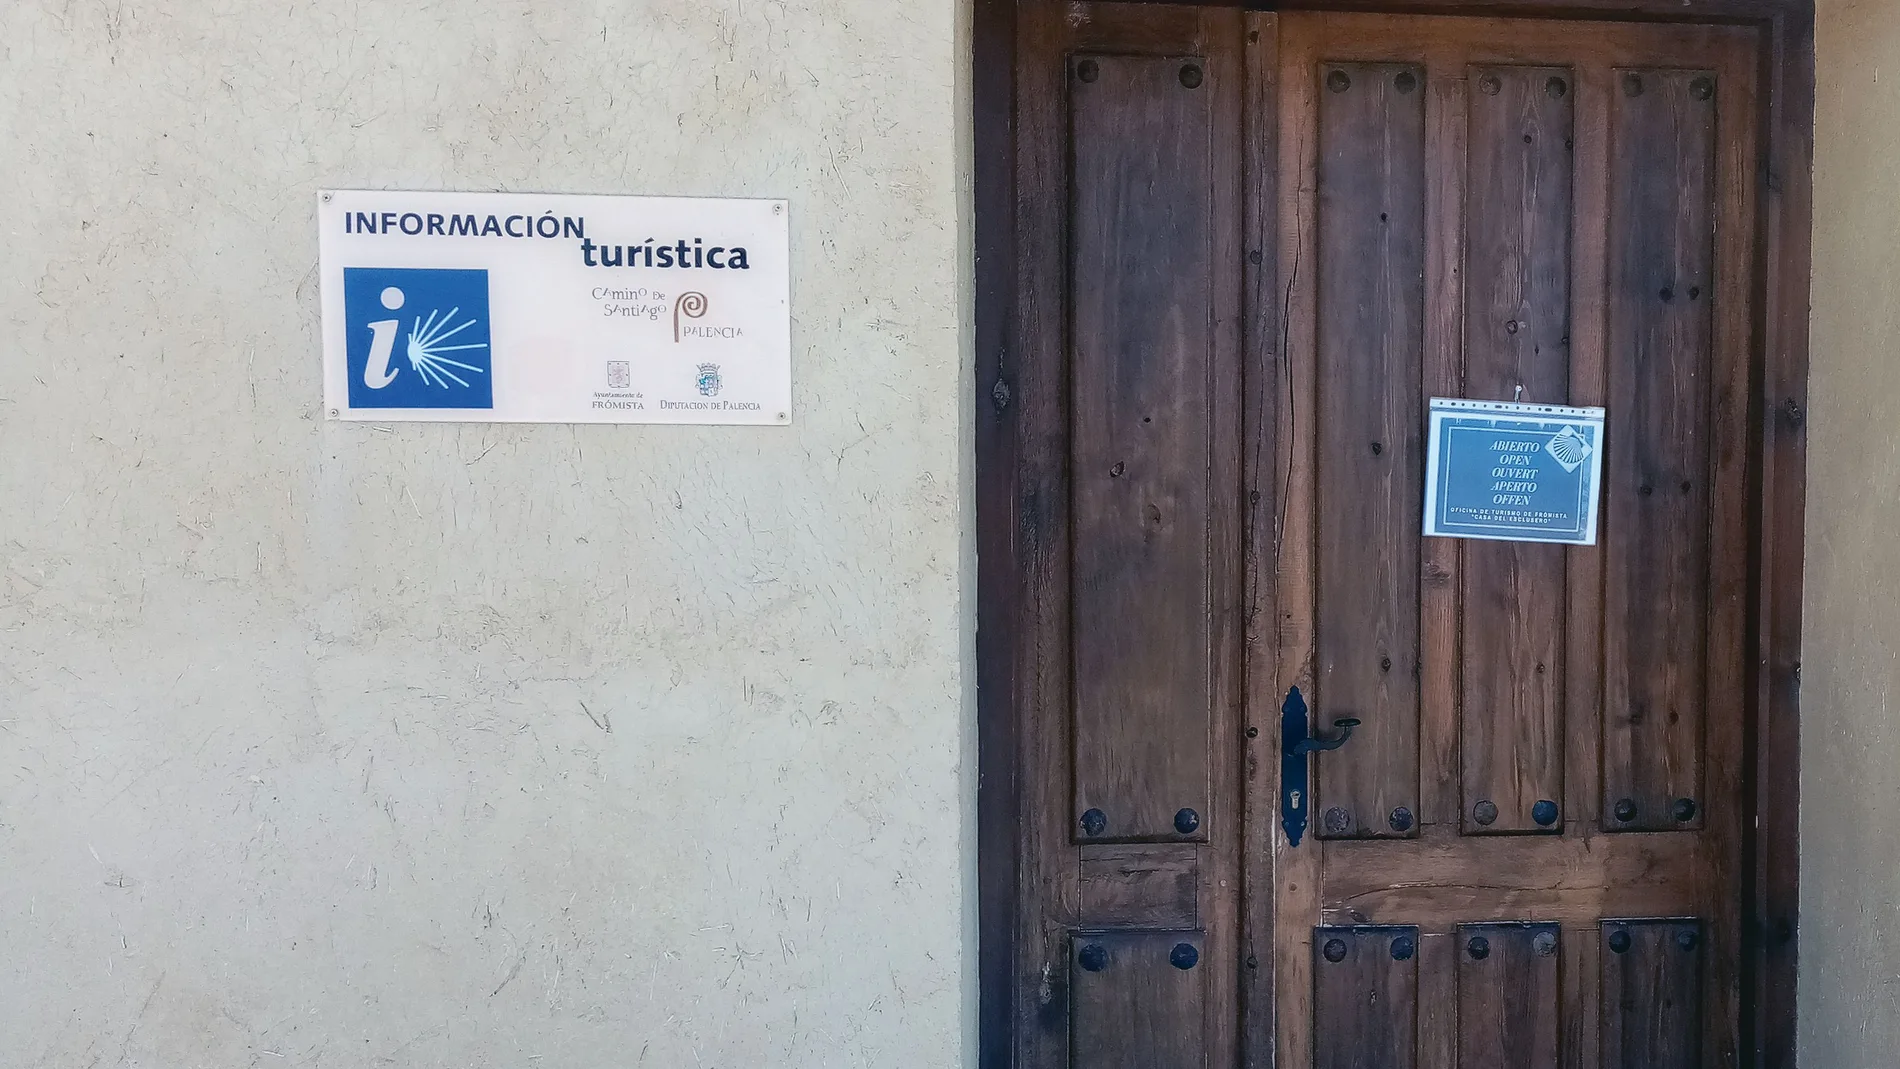 Imagen de la oficina de turismo de la localidad palentina de Frómista, que recibirá seis mil euros de ayuda